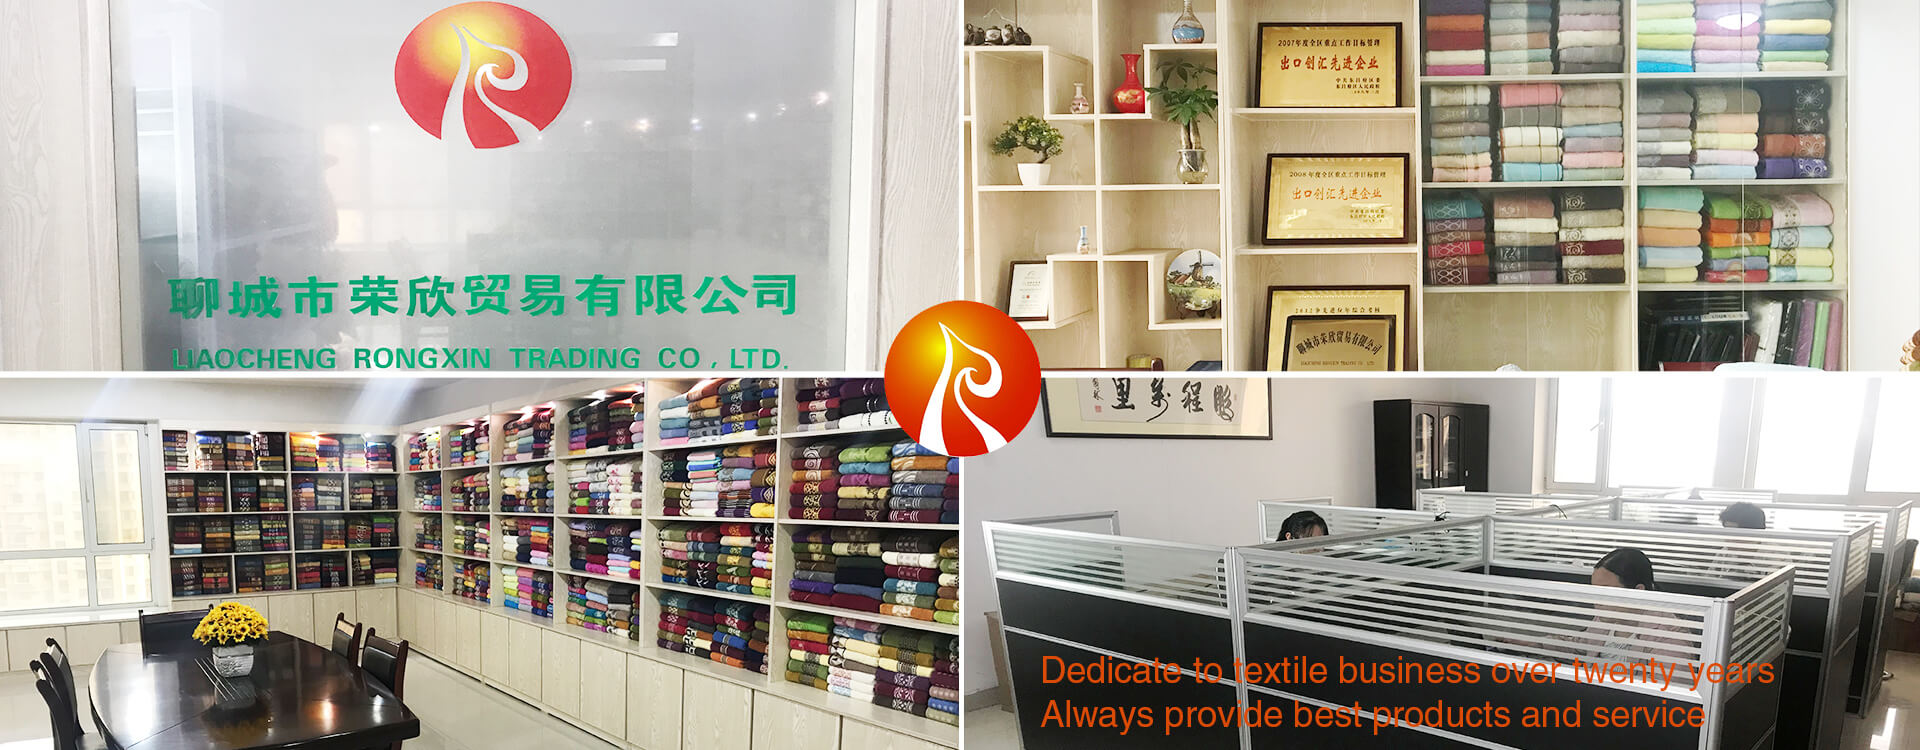 Liaocheng Rongxin Trading Co., Ltd.